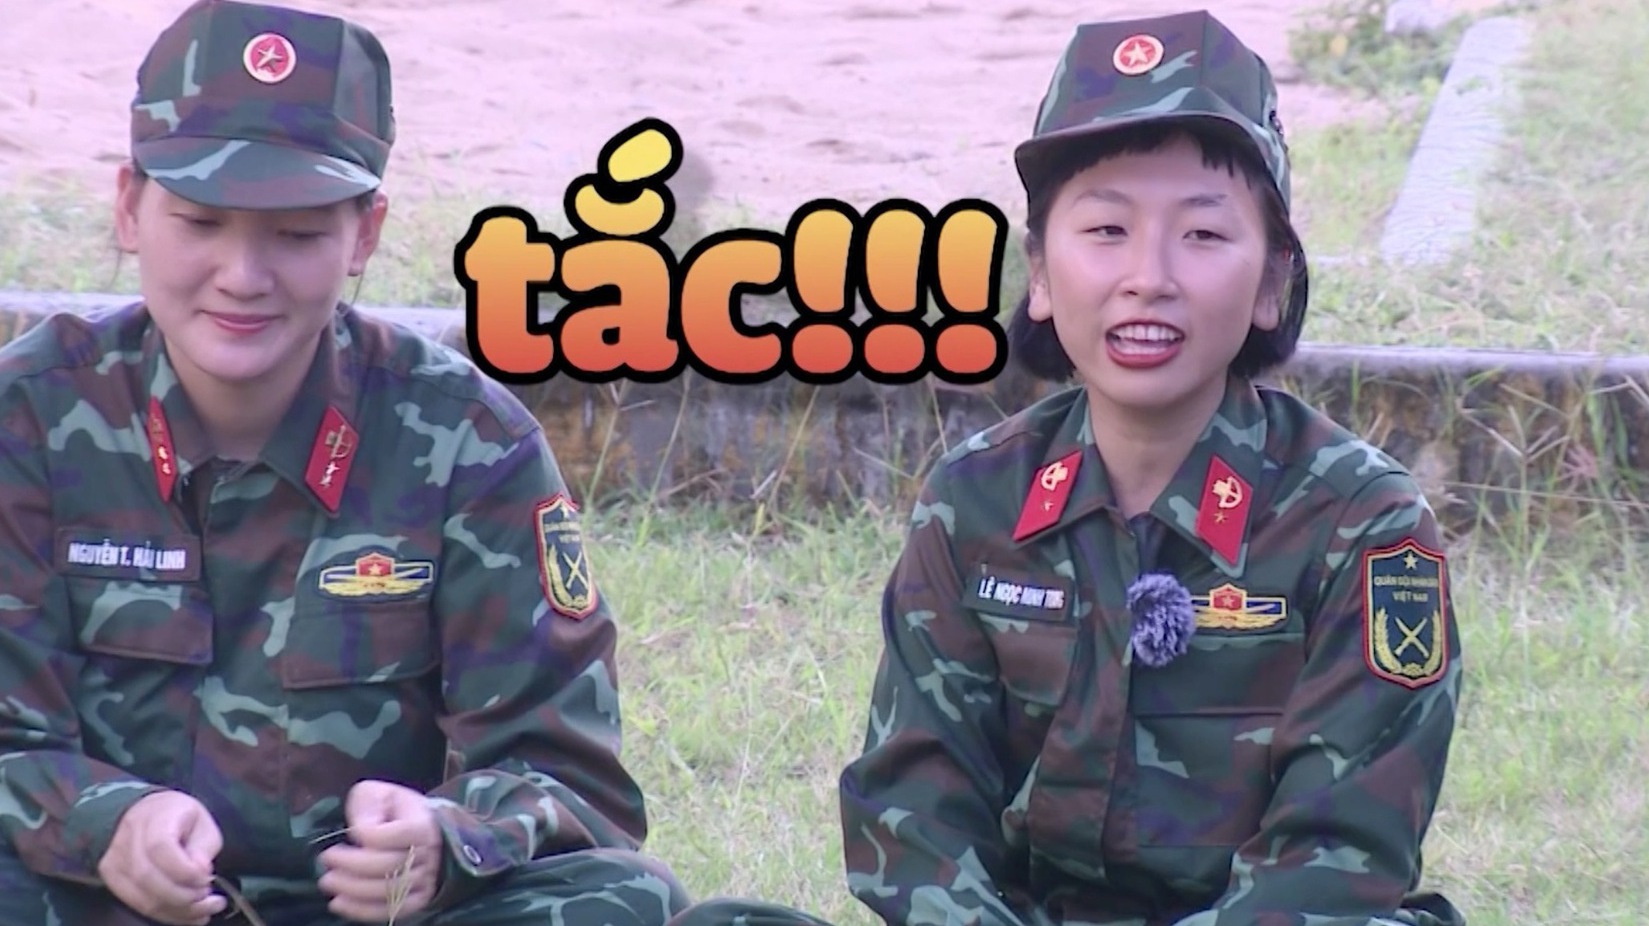 Trang Hý thông báo tình trạng hôn nhân 'bế tắc', mừng rỡ tìm được chiến sĩ hợp tuổi ở 'Sao nhập ngũ'